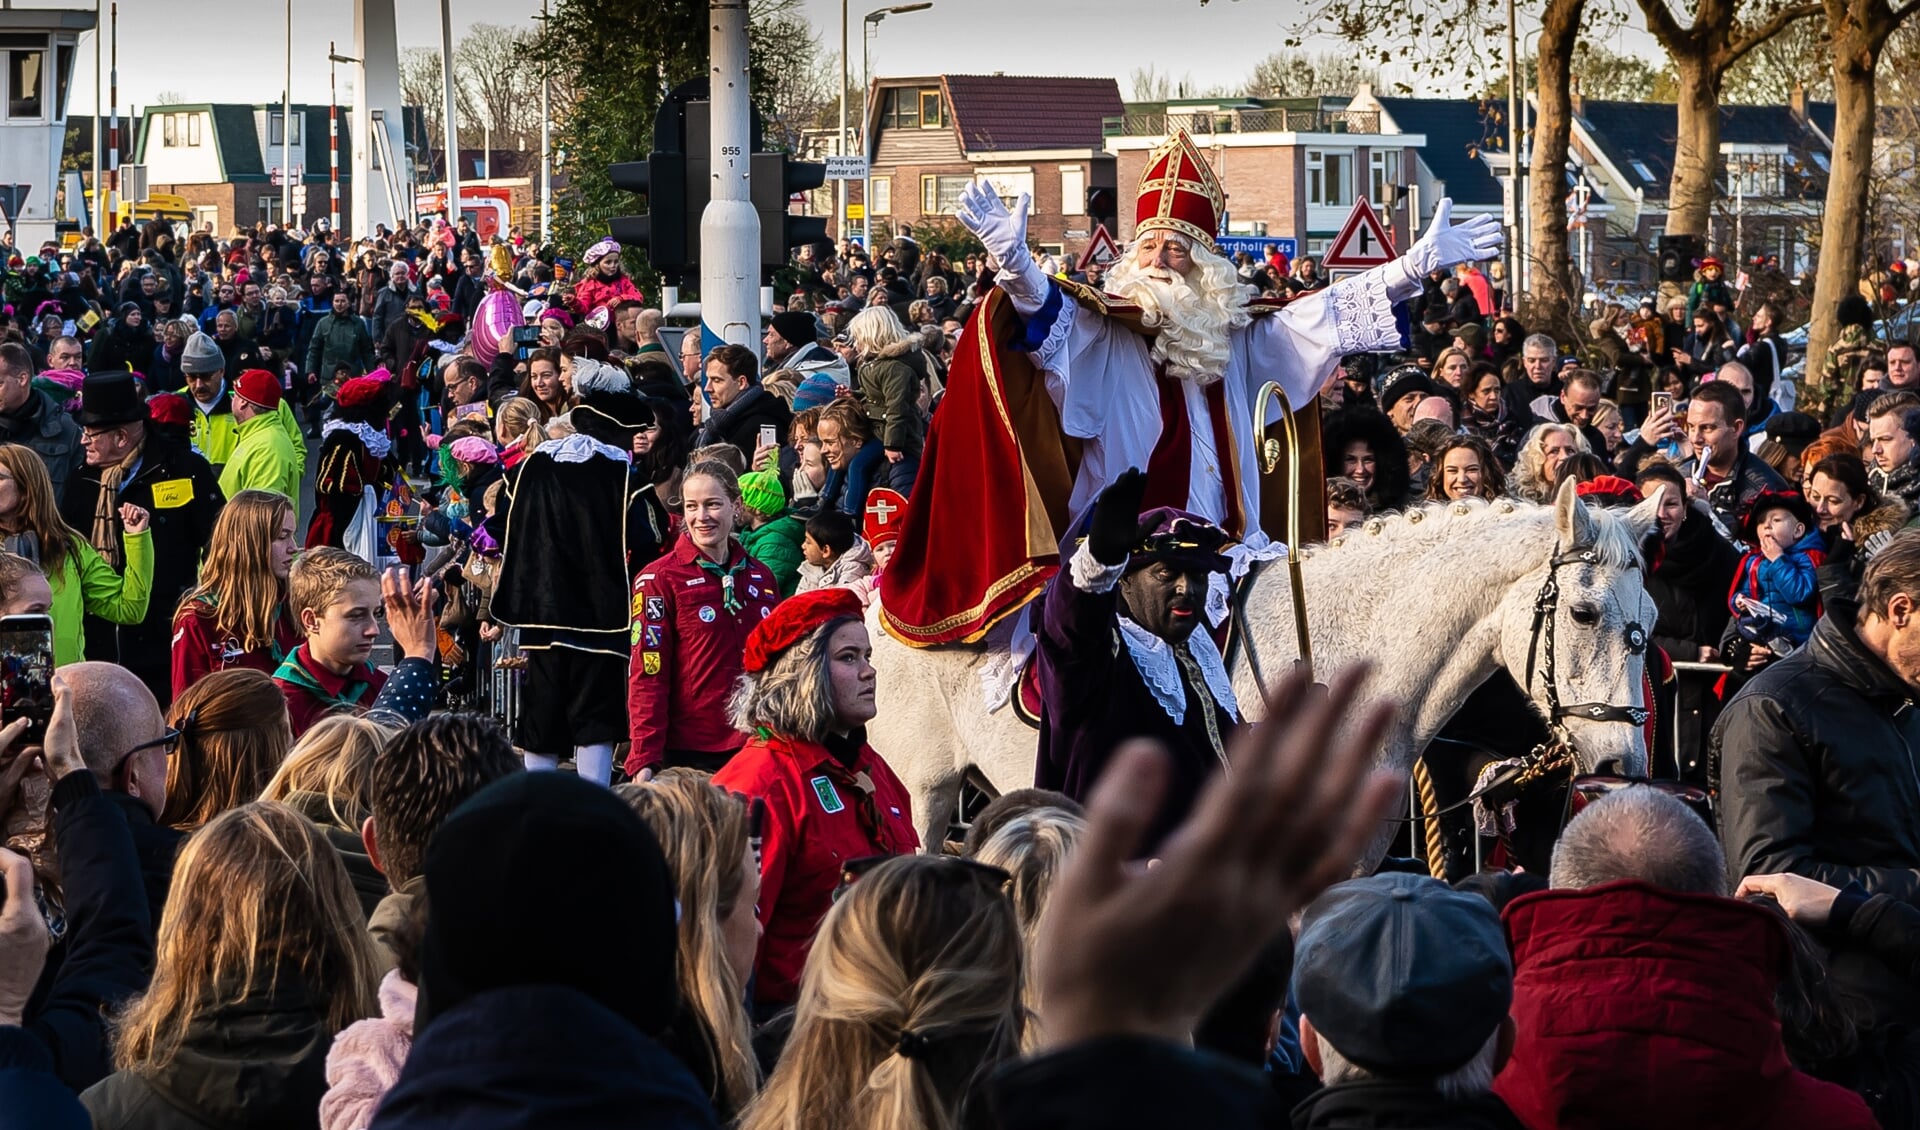 Zondag 15 november komt de Sint aan. Niet op zijn paard maar met de bus.